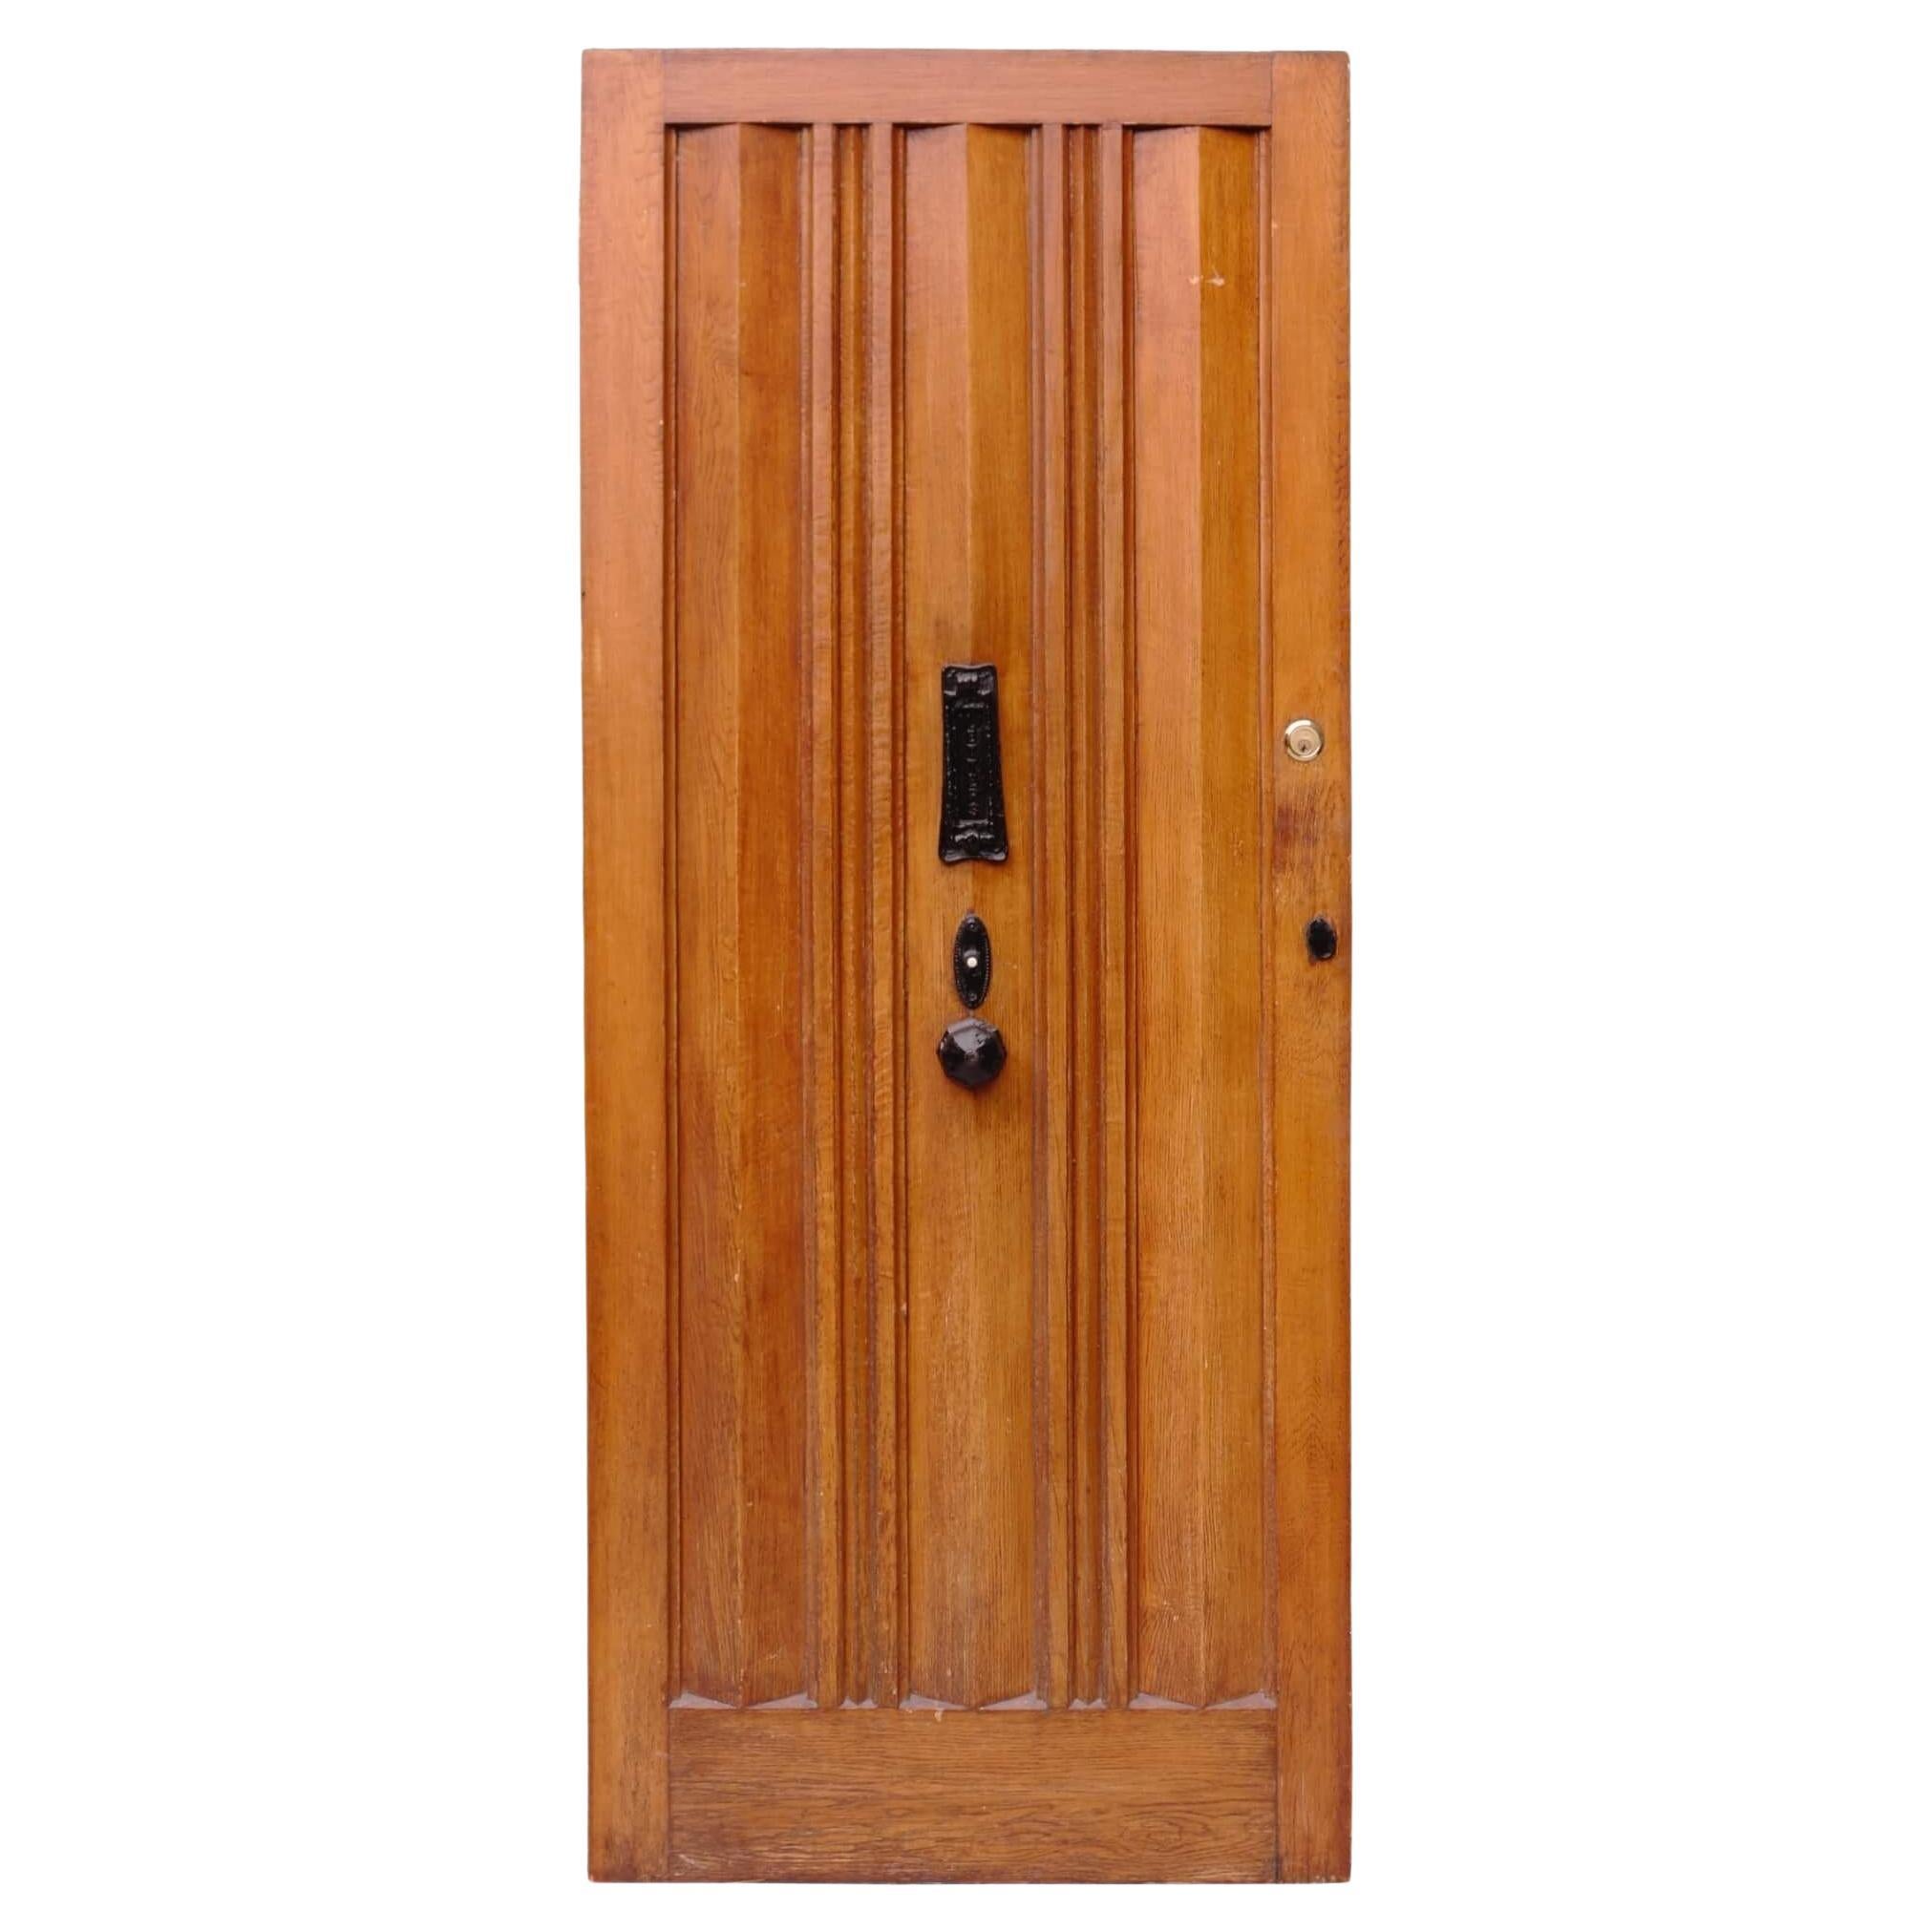 Reclaimed 1930s Oak Front Door with Bell